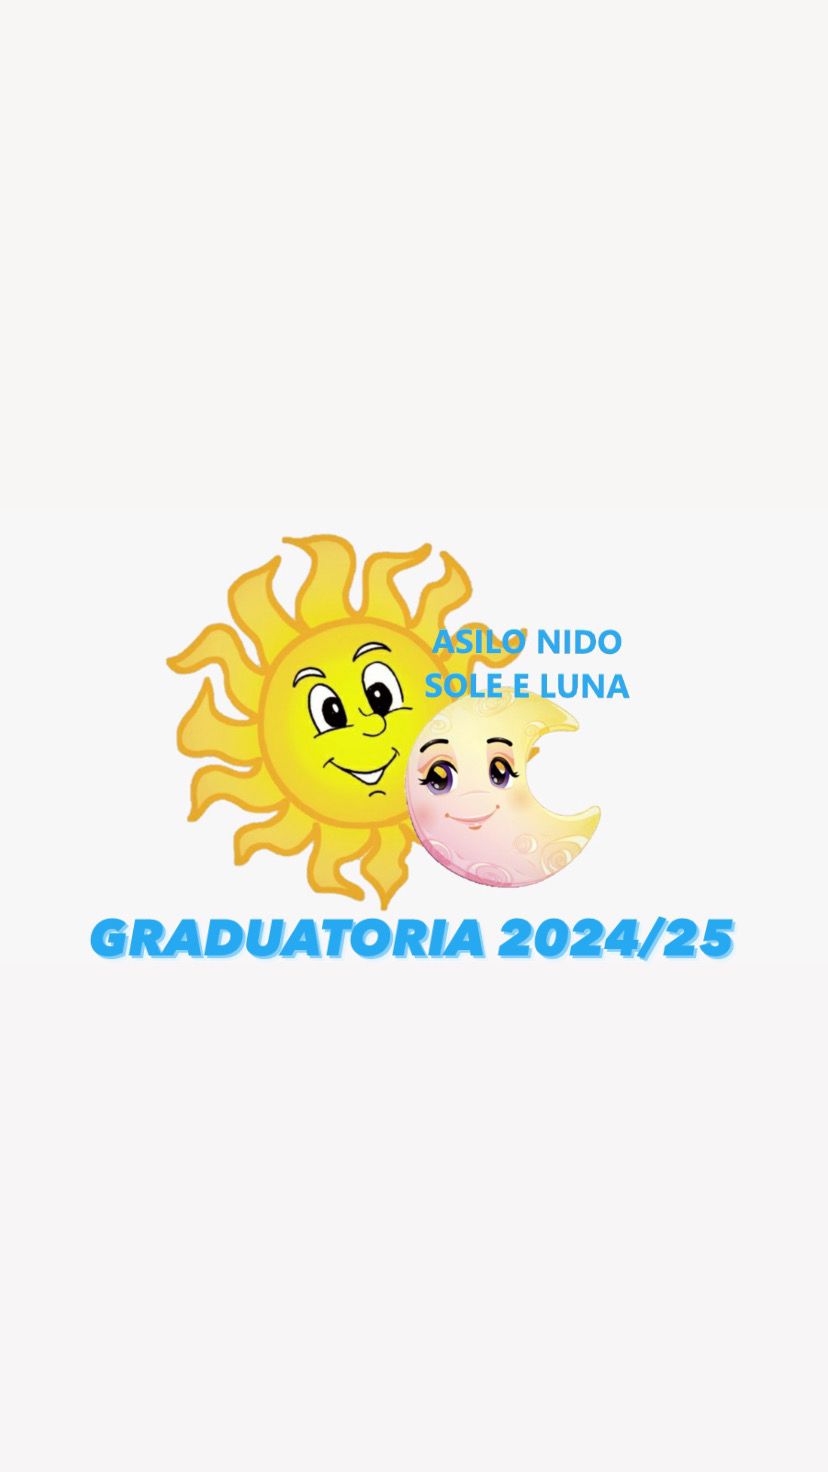  Graduatoria definitiva asilo nido "Sole e Luna" anno formativo 2024-25